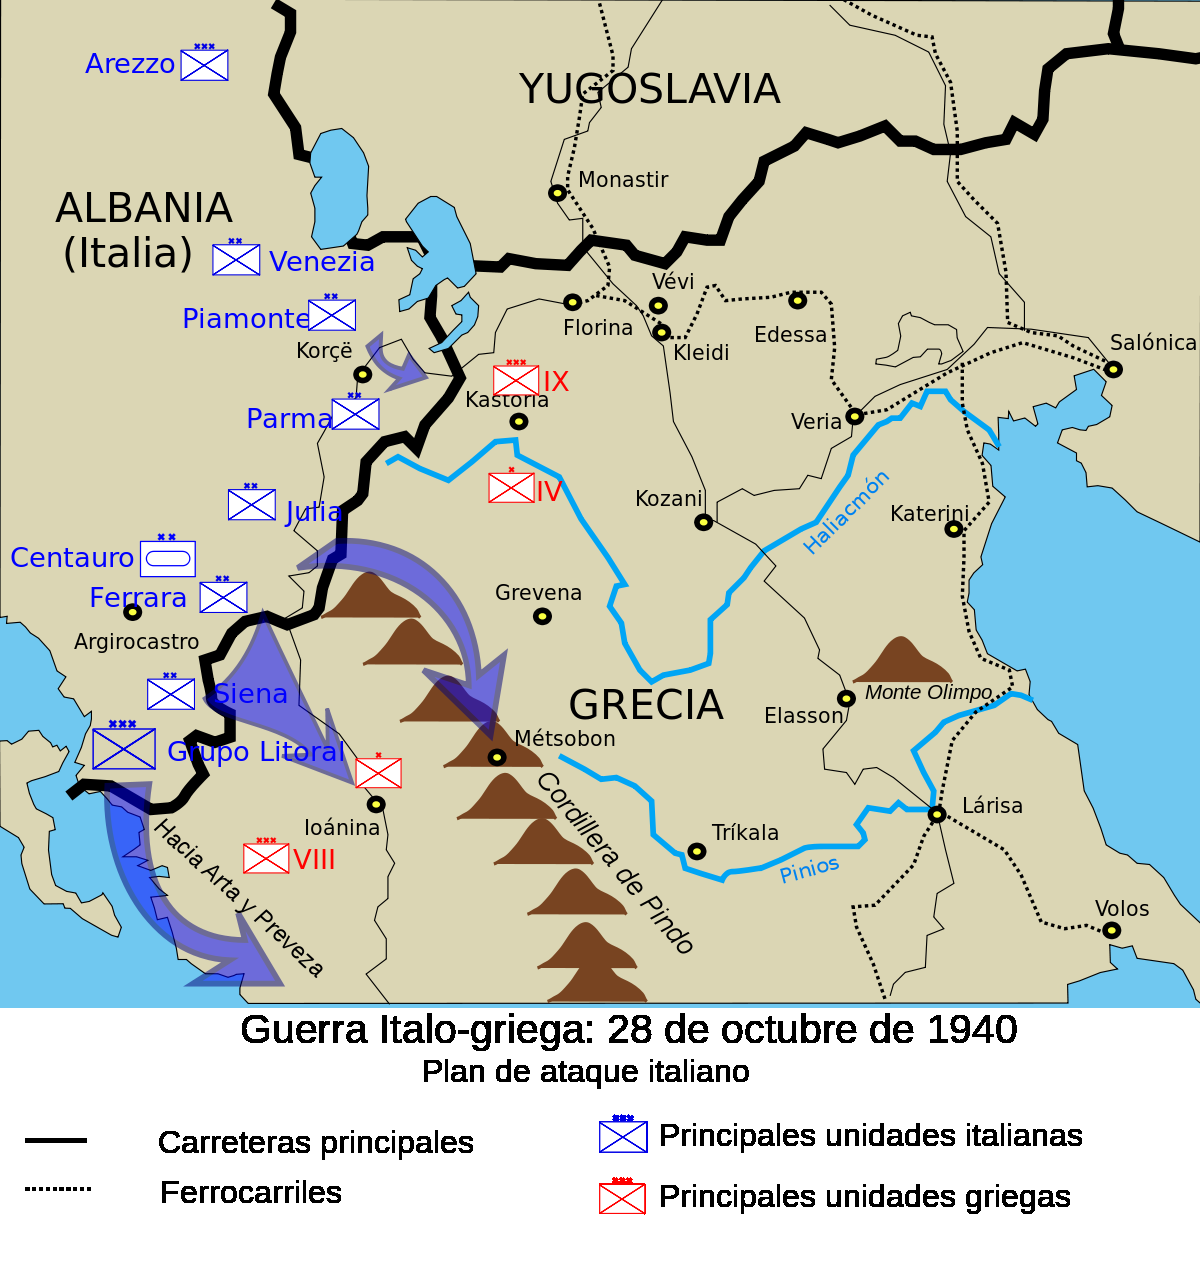 Ελληνοϊταλικός πόλεμος (1940-1941) 8 Ανάμεσα στα δύο Σώματα Στρατού, στην περιοχή Ερσέκα- Λεσκοβίκι, την 3η Μεραρχία Αλπινιστών «Τζούλια» υπο τον στρατηγό Τζιρότι (Girotti), η οποία είχε δύναμη 10.